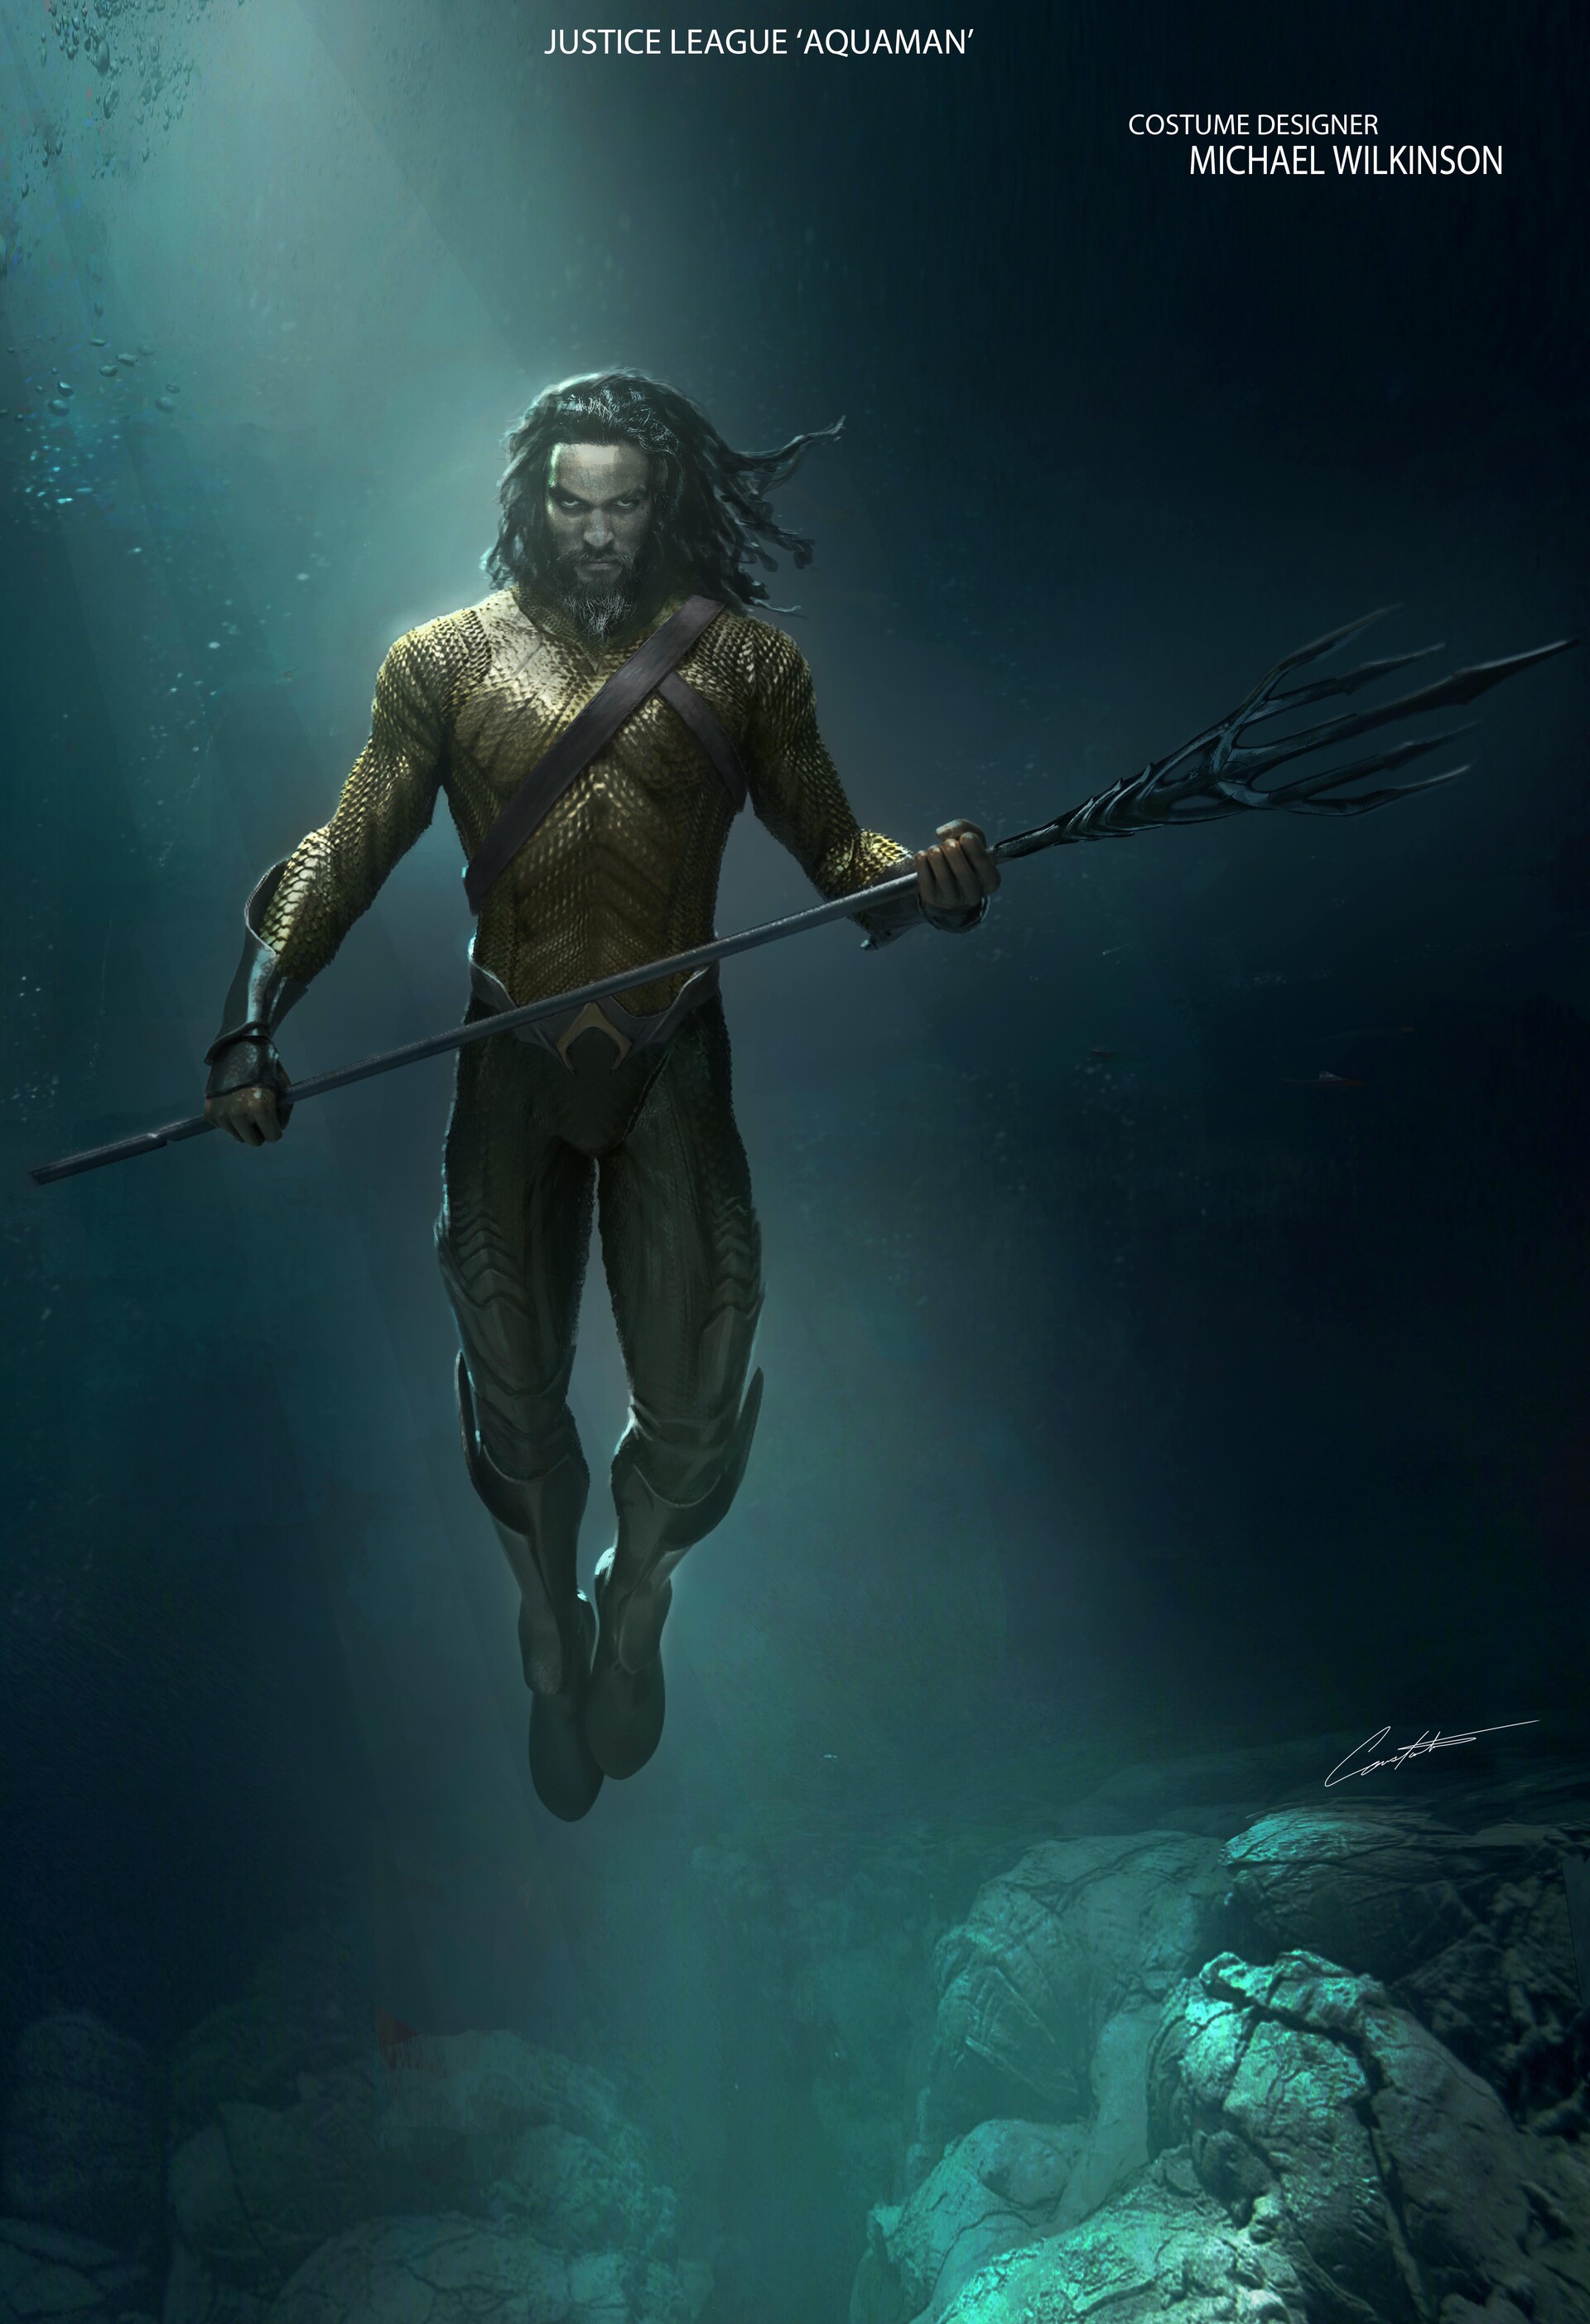 Justice League Aquaman concept art